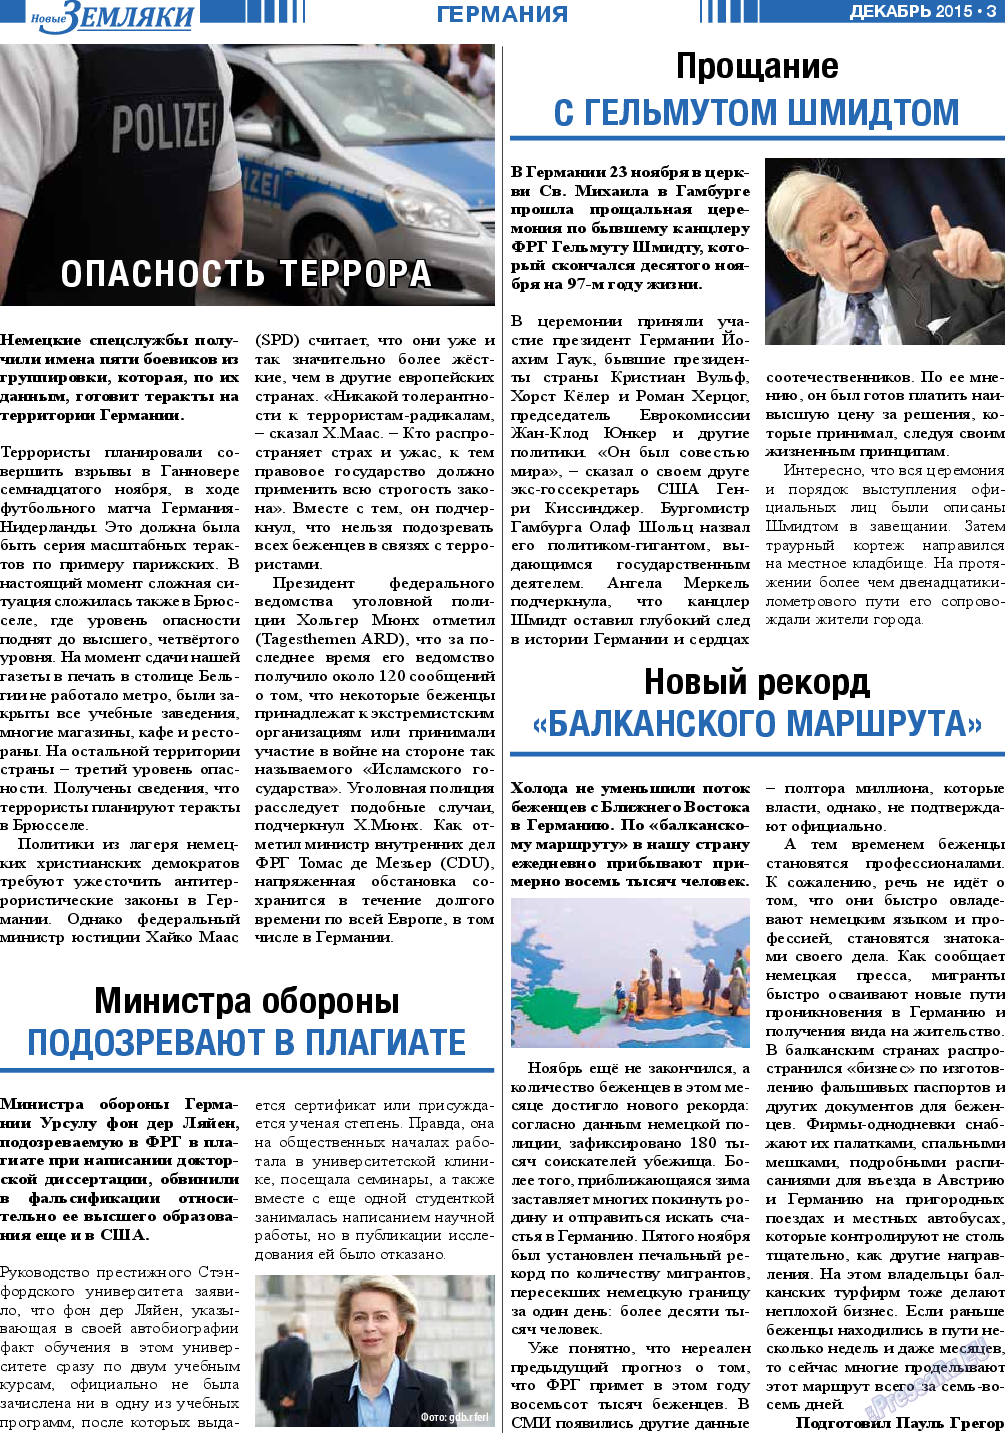 Новые Земляки (газета). 2015 год, номер 12, стр. 3